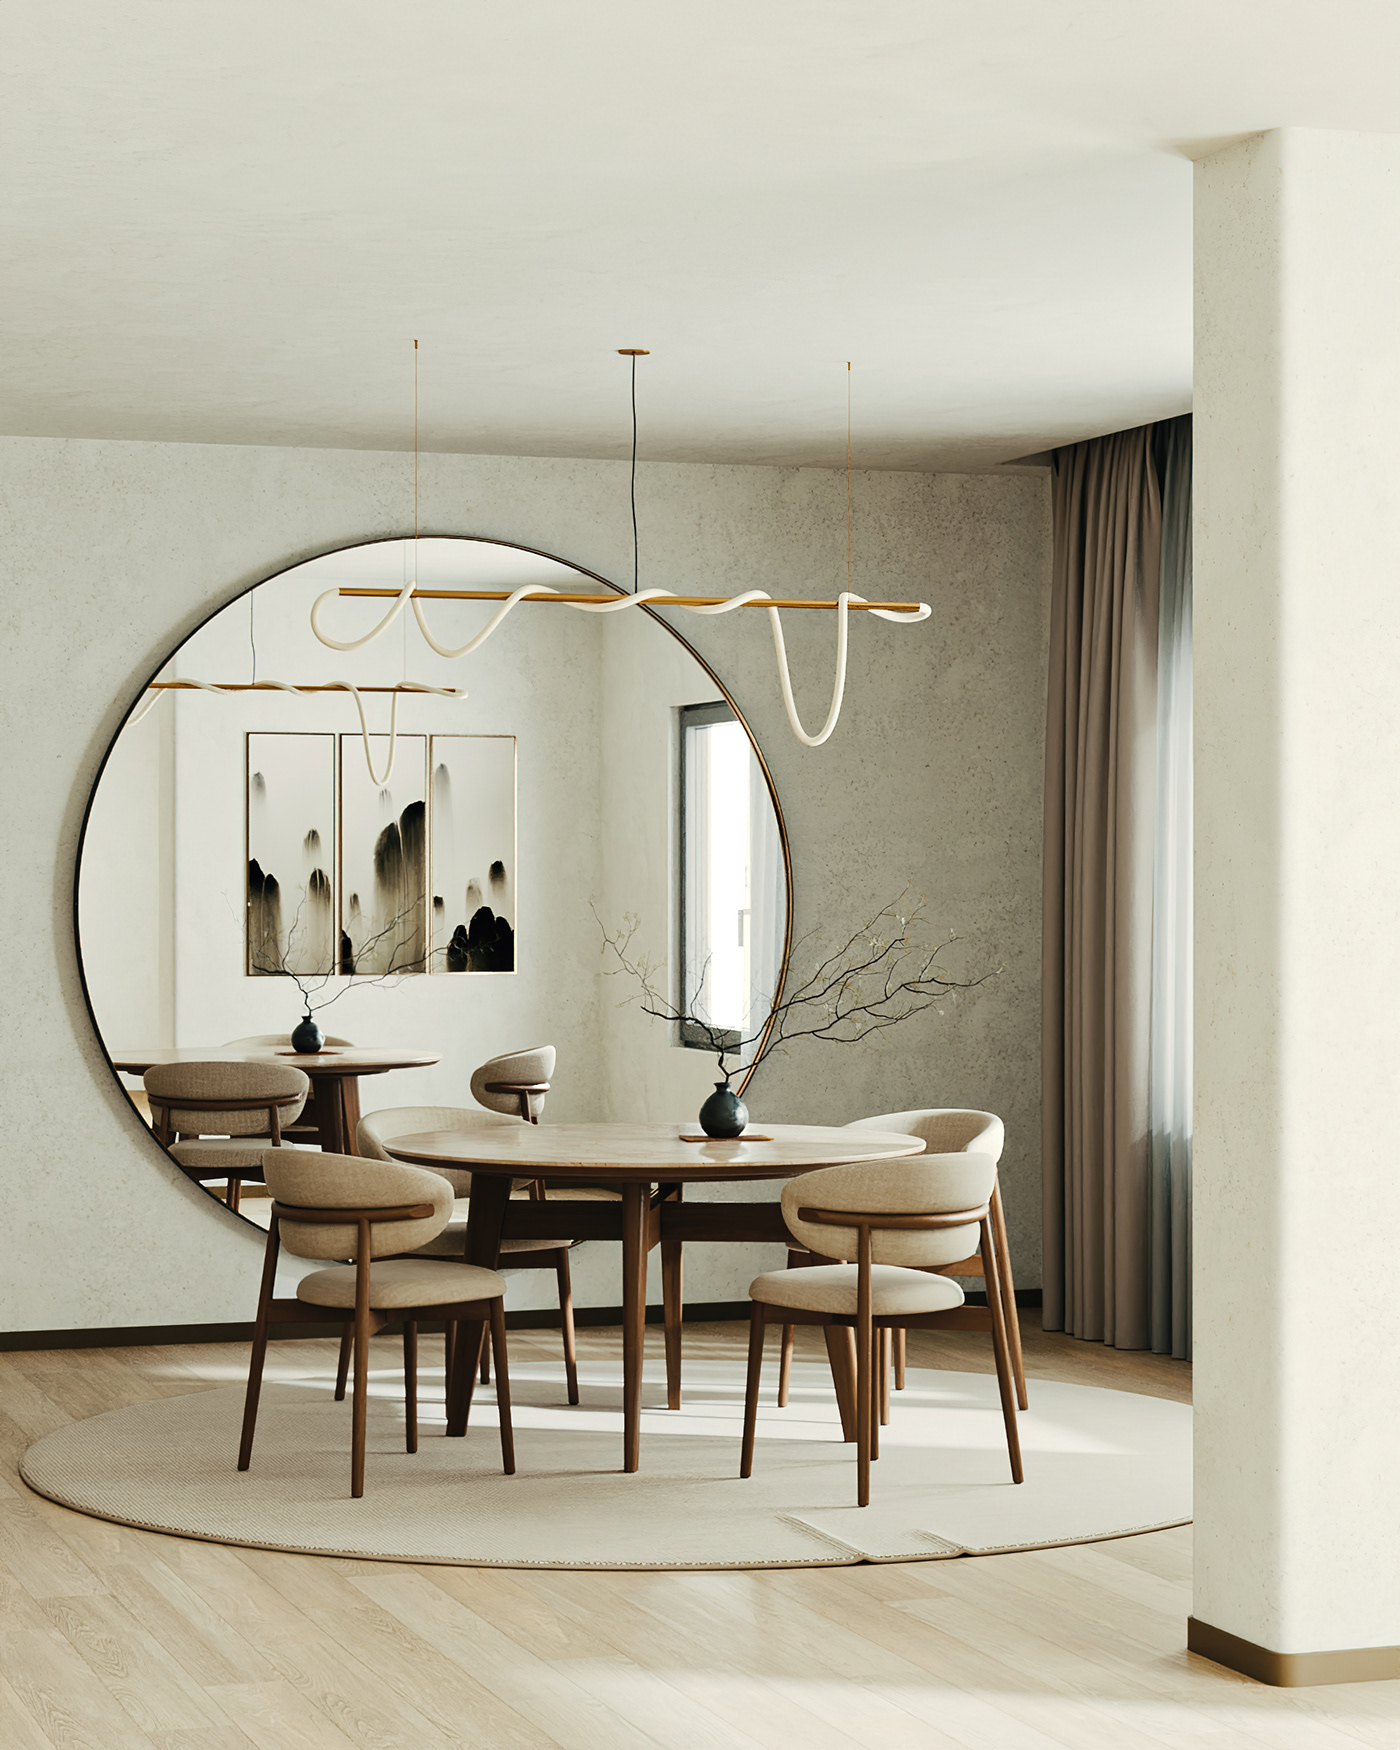 interior design  archviz archvizartist architecture 3DArtist rendering 3dsmax corona render  dining room home decor